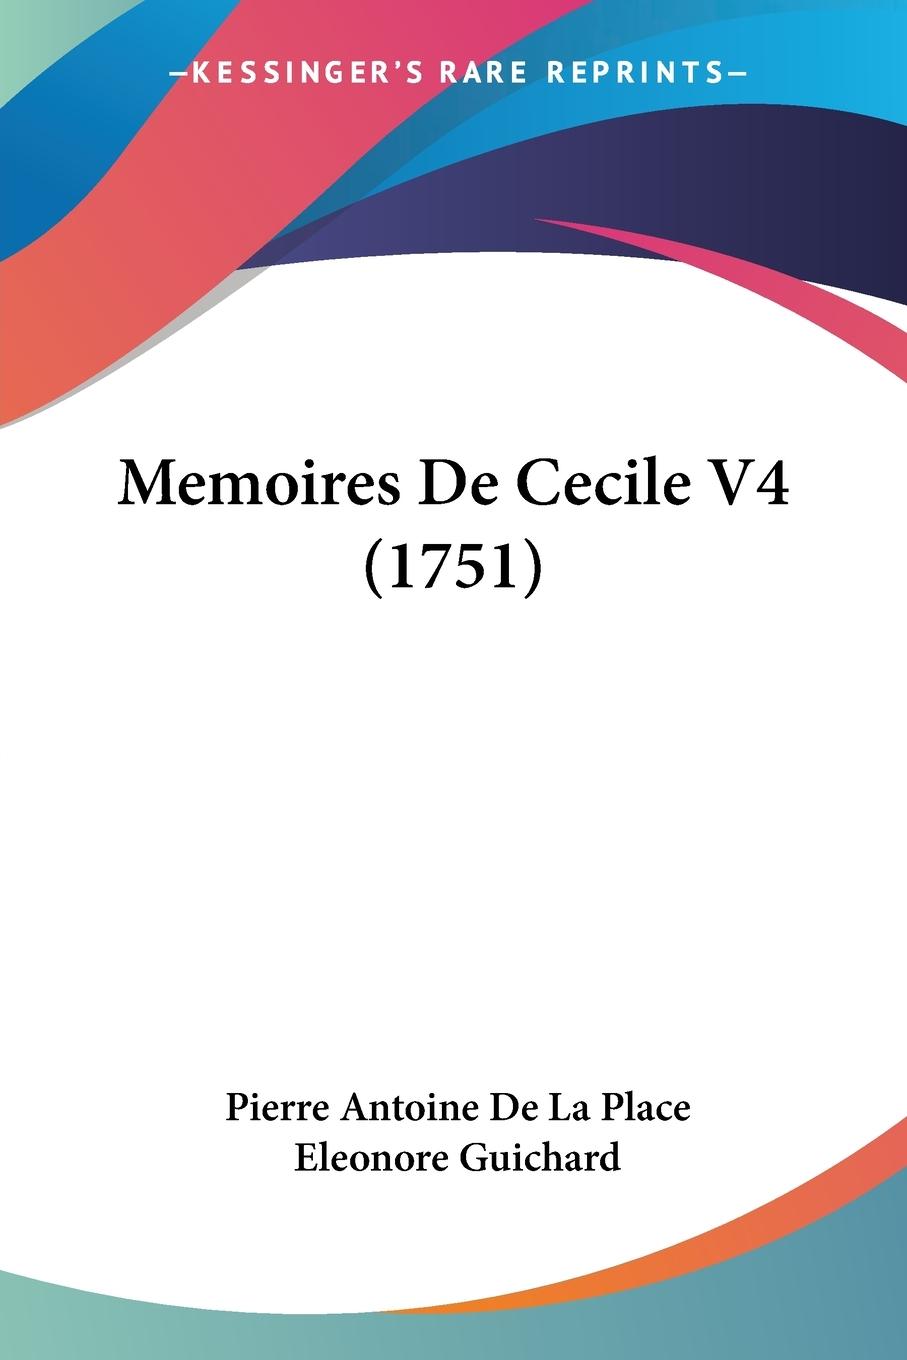 Memoires De Cecile V4 (1751) - Place, Pierre Antoine De La Guichard, Eleonore